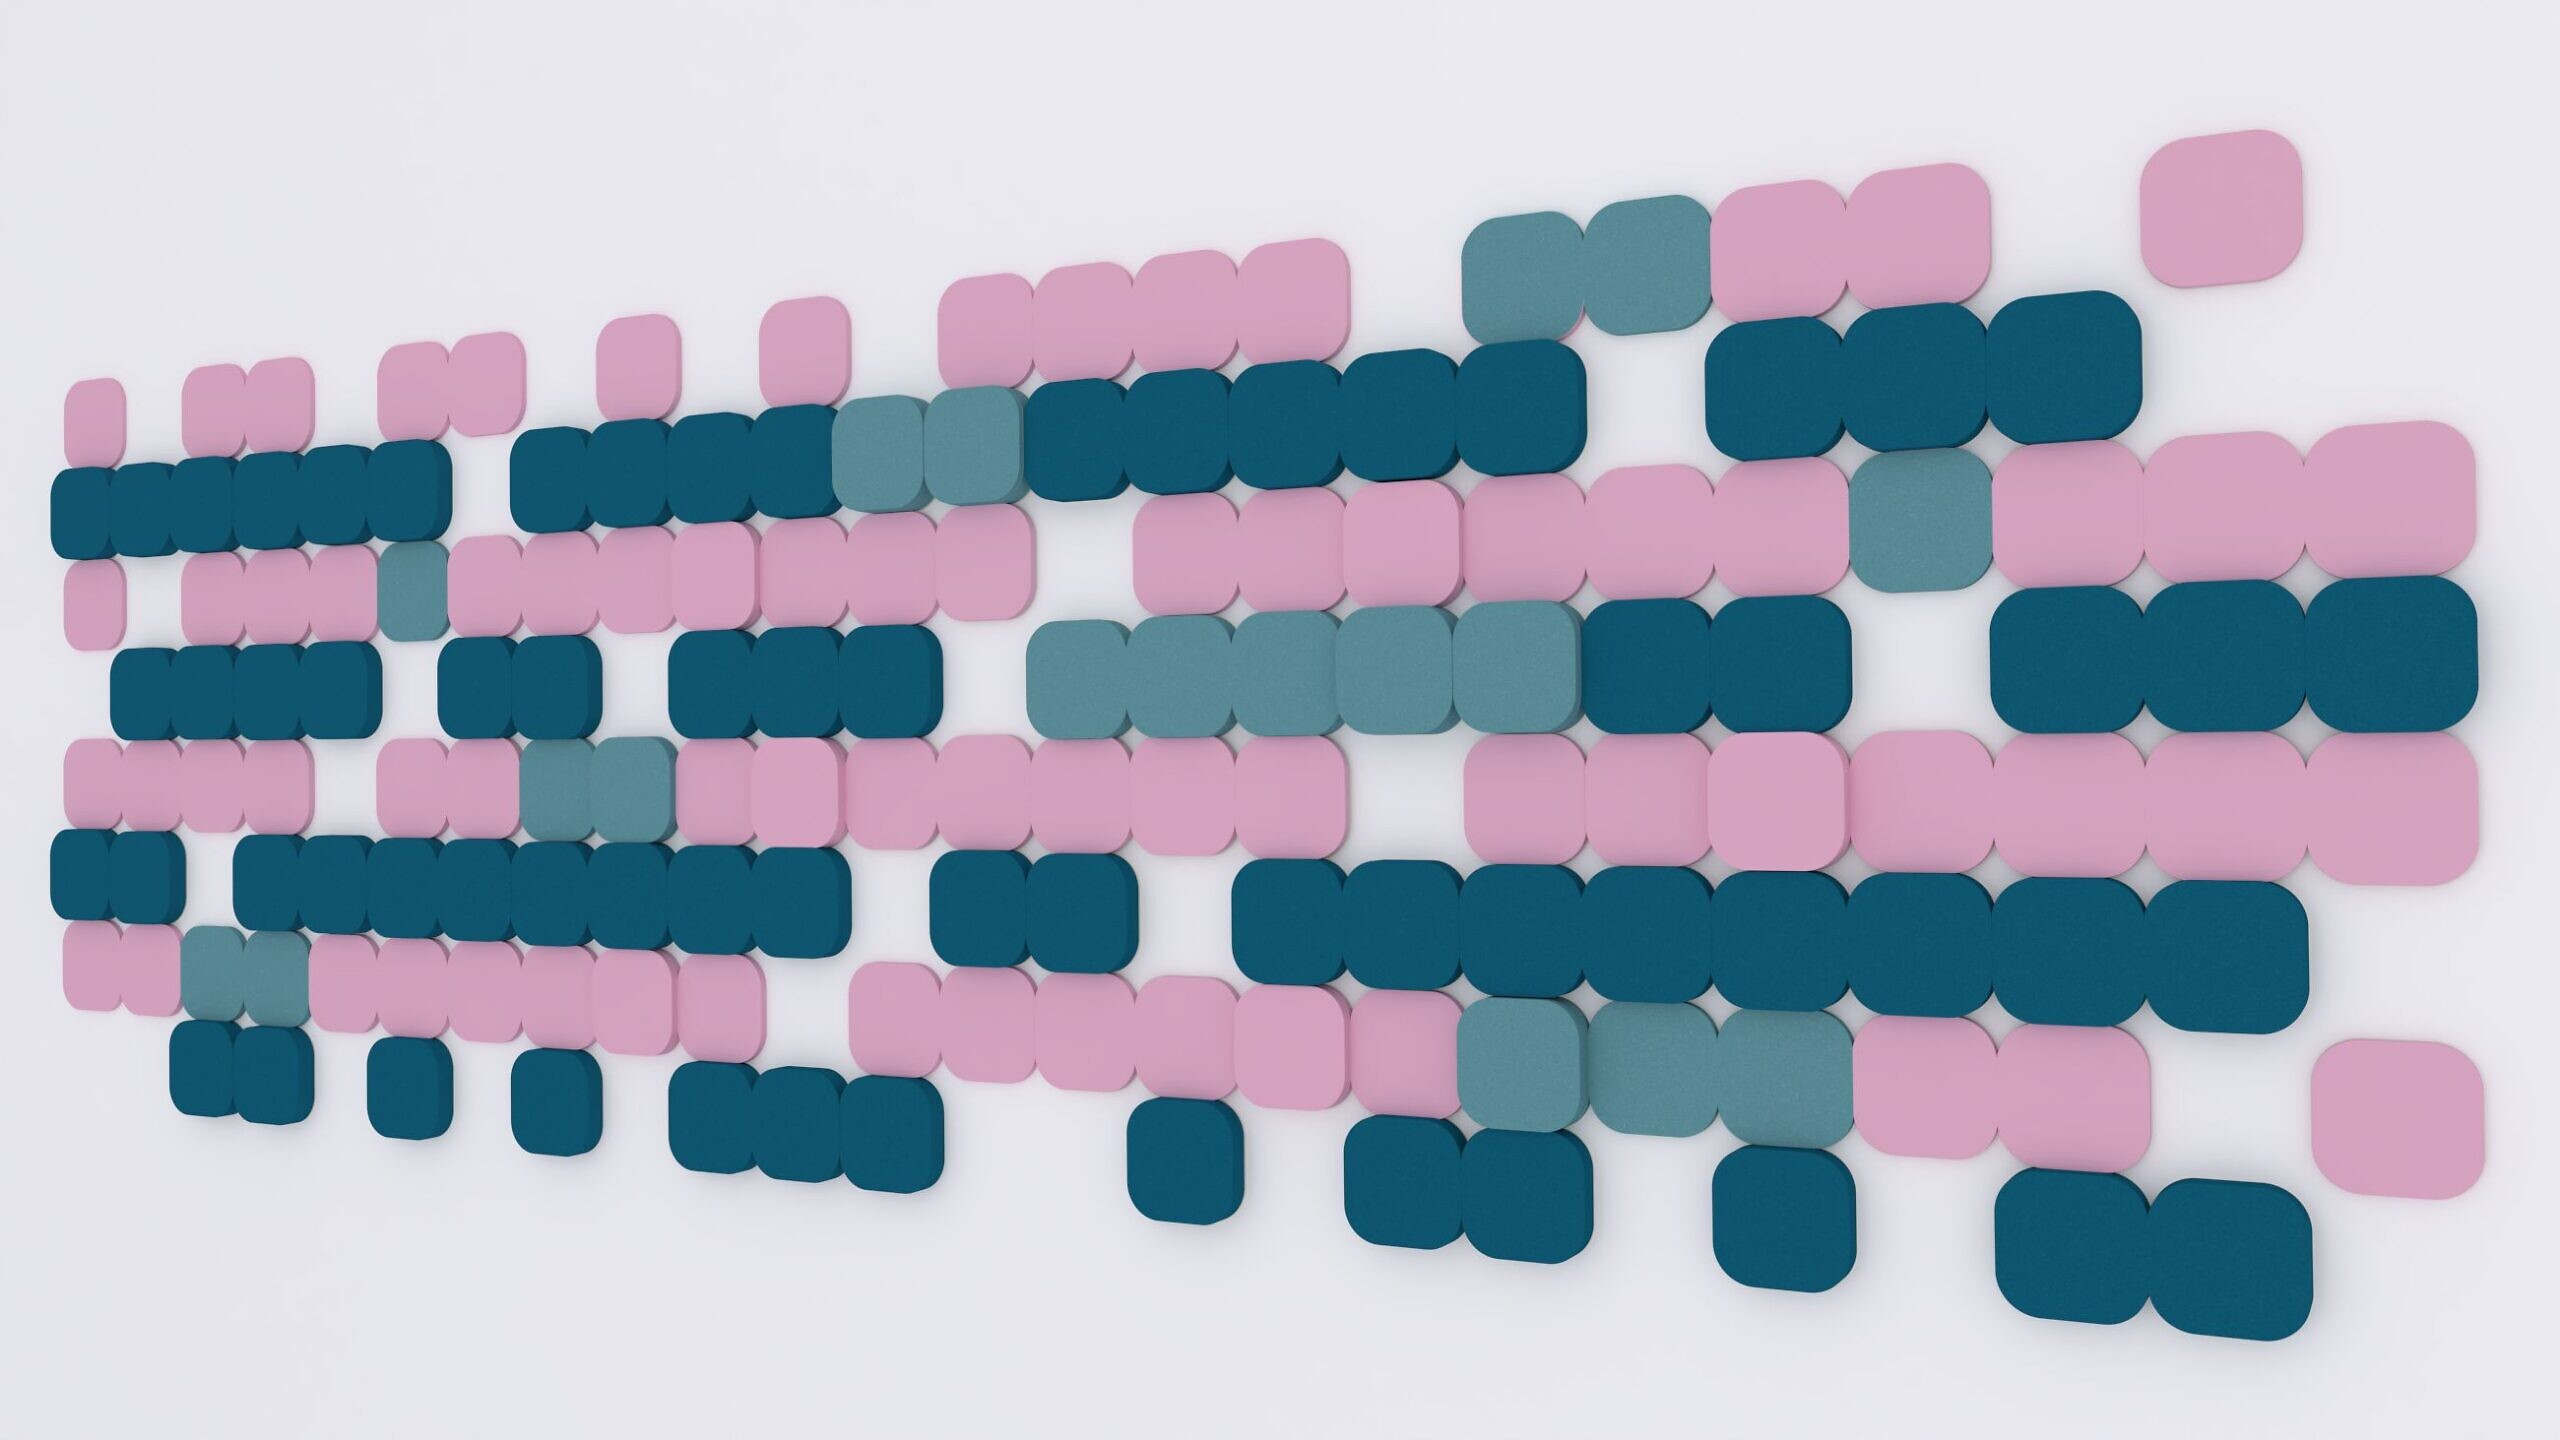 Panel akustyczny Fluffo o wzorze S Cut, składający się z różowych, miętowych i niebieskich elementów